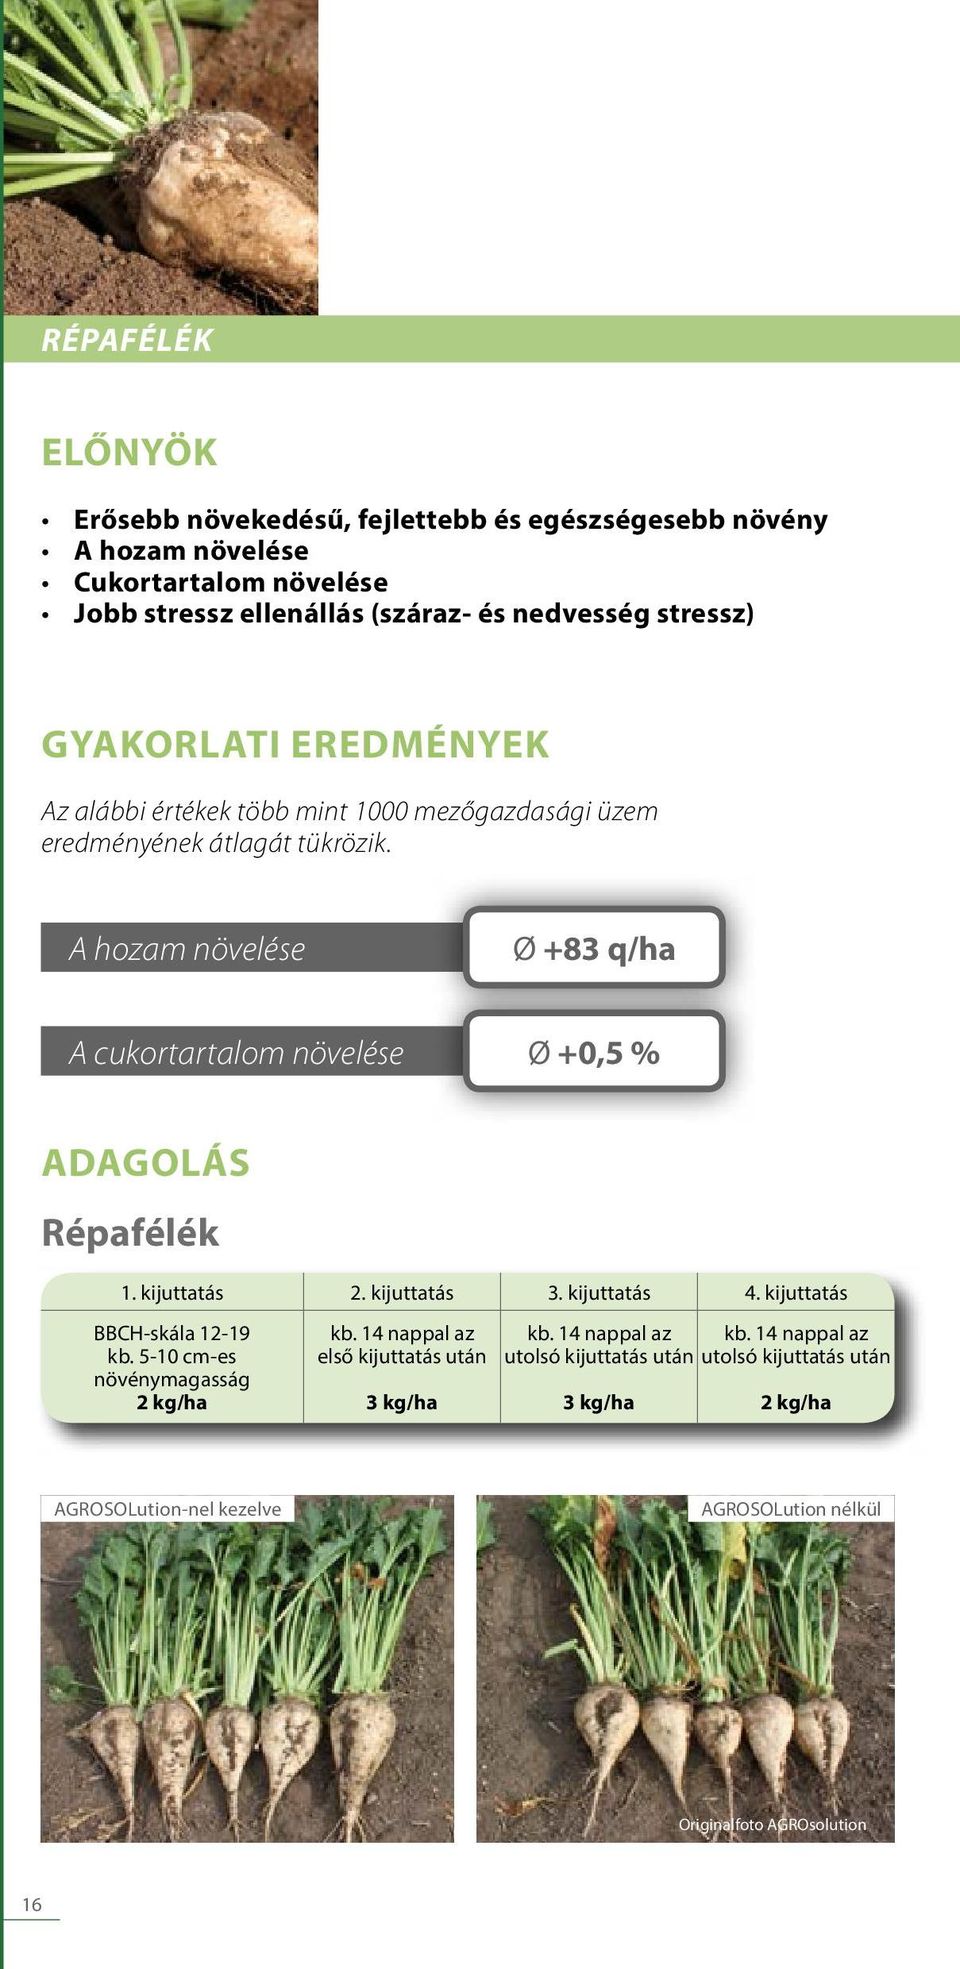 A hozam növelése Ø +83 q/ha A cukortartalom növelése Ø +0,5 % ADAGOLÁS Répafélék 1. kijuttatás 2. kijuttatás 3. kijuttatás 4. kijuttatás BBCH-skála 12-19 kb.